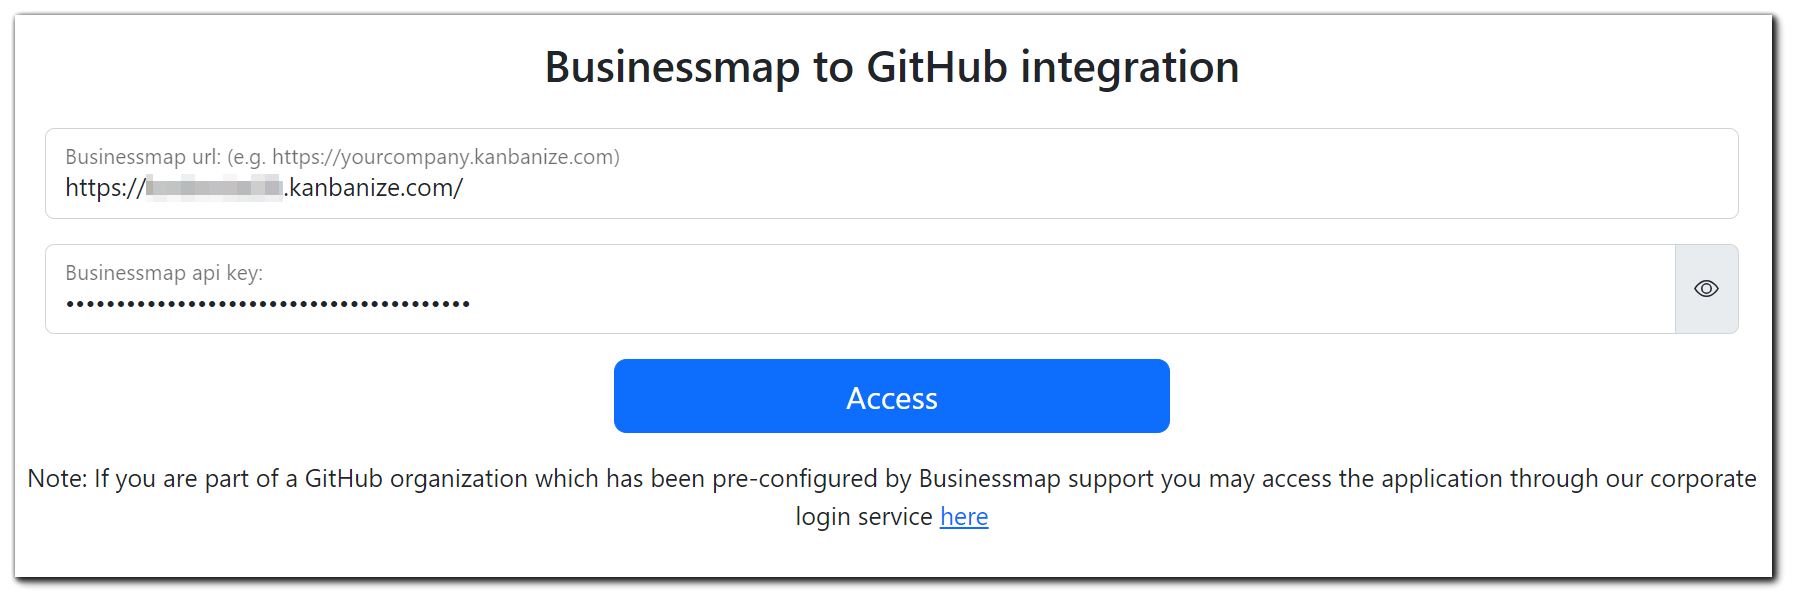 Businessmap-to-GitHub-integration-setup.png